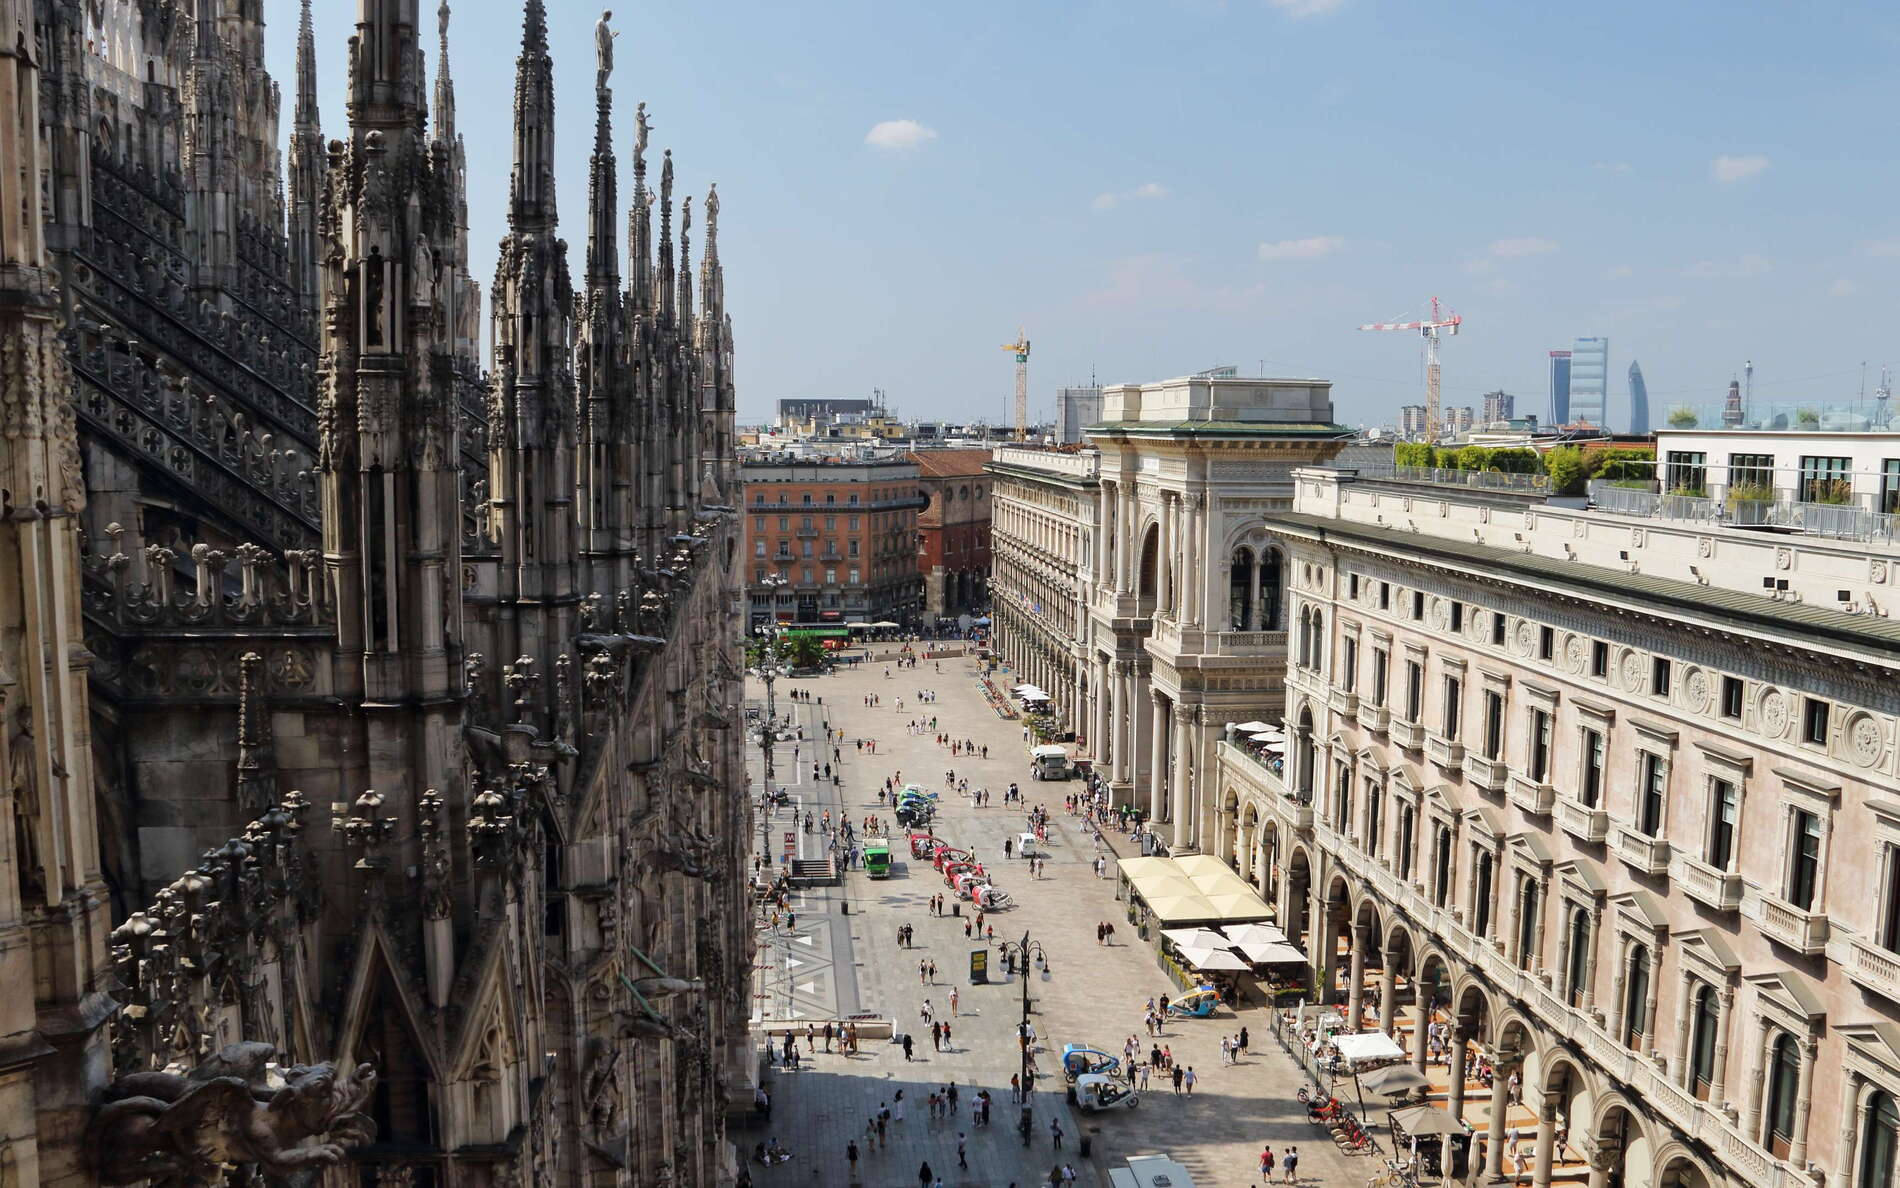 Milano | Duomo di Milano and Piazza del Duomo